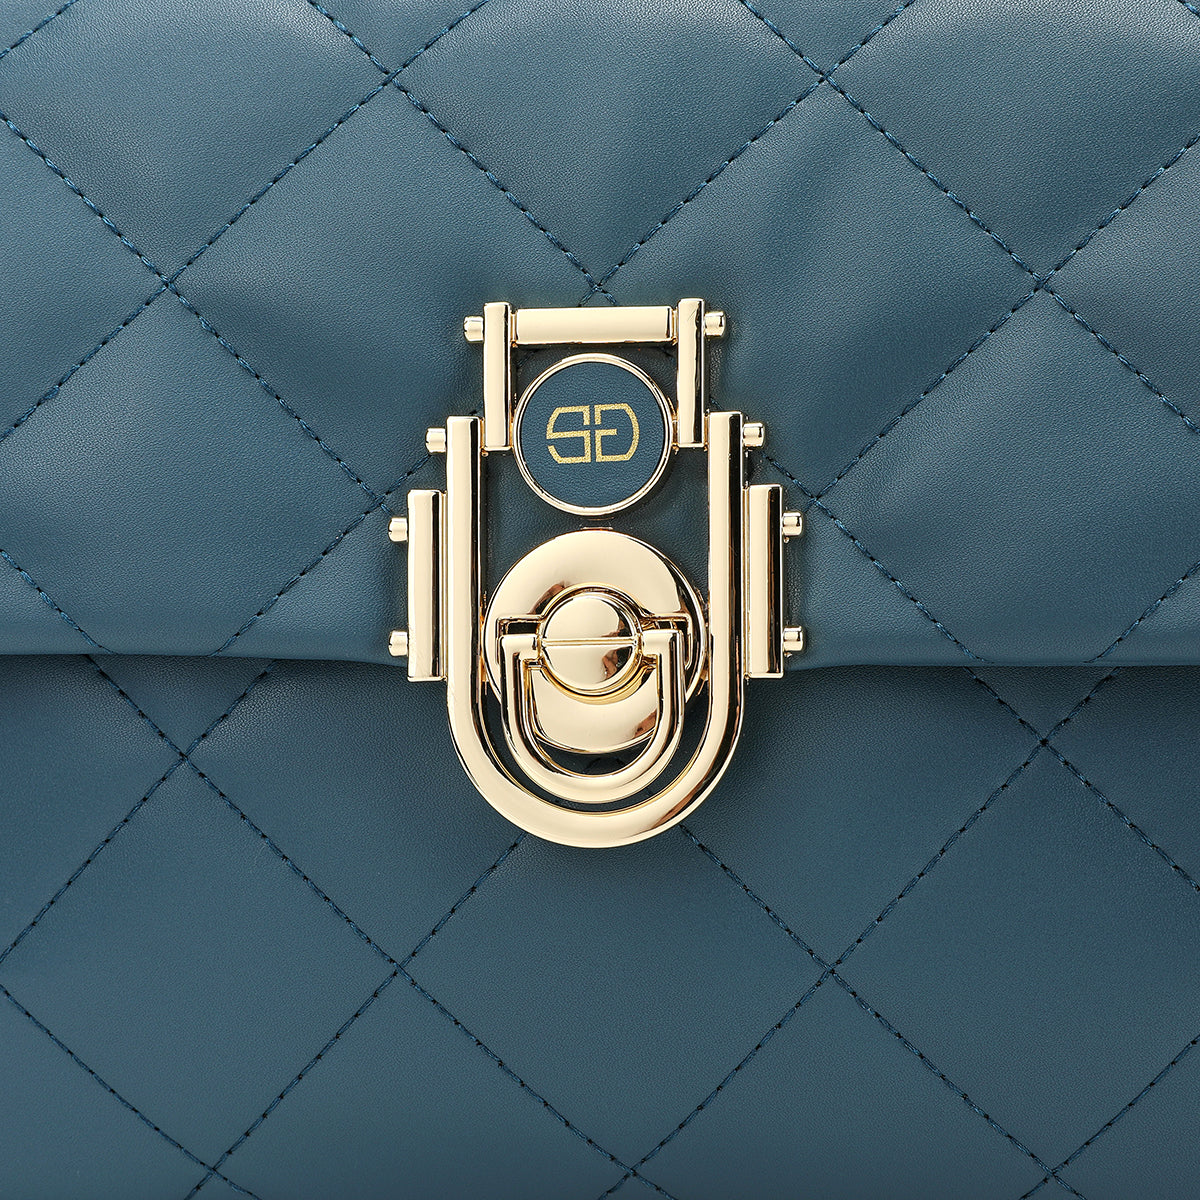 تفصيل مقرب للقفل الذهبي الأنيق على حقيبة يد ساغا باللون الأزرق الفاتح.